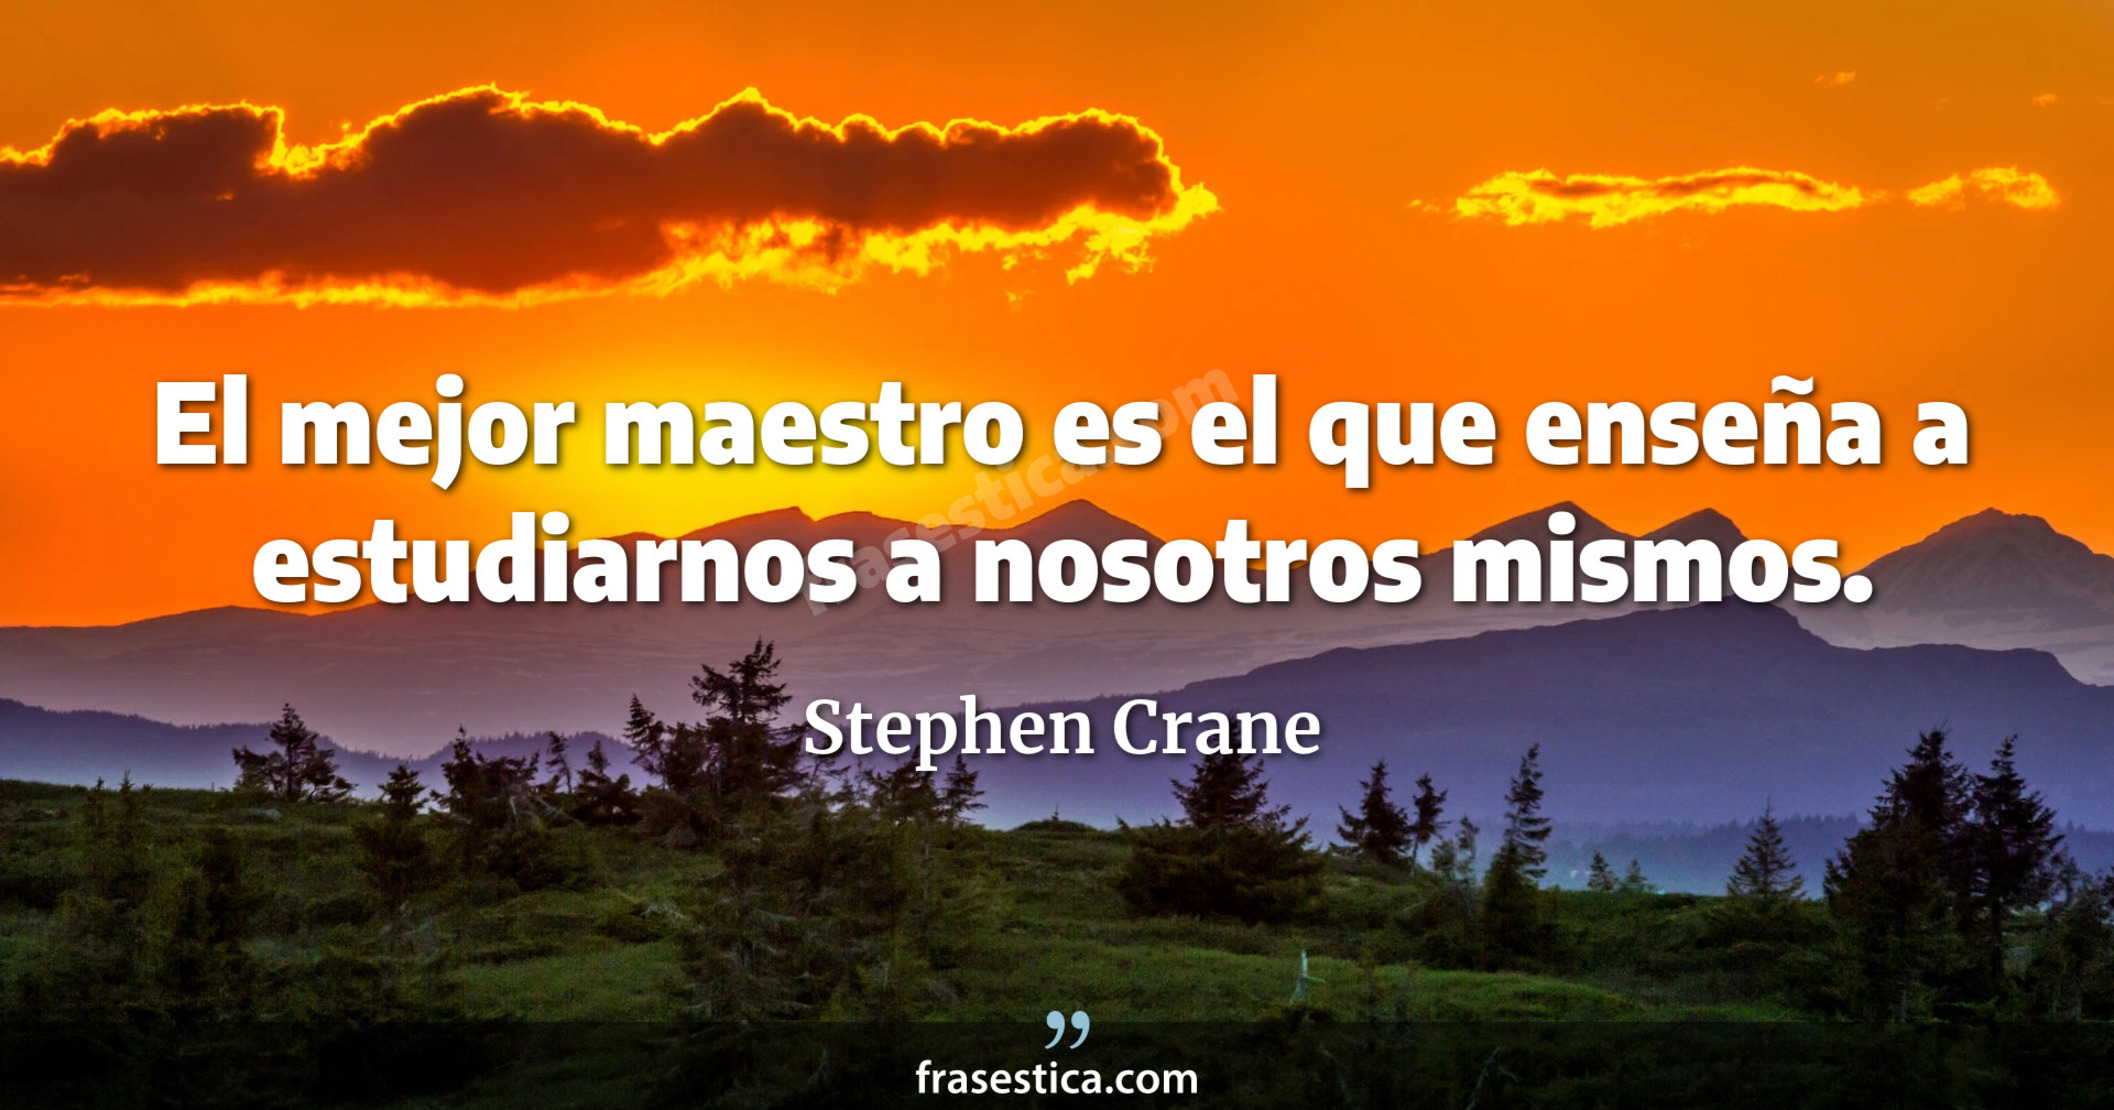 El mejor maestro es el que enseña a estudiarnos a nosotros mismos. - Stephen Crane